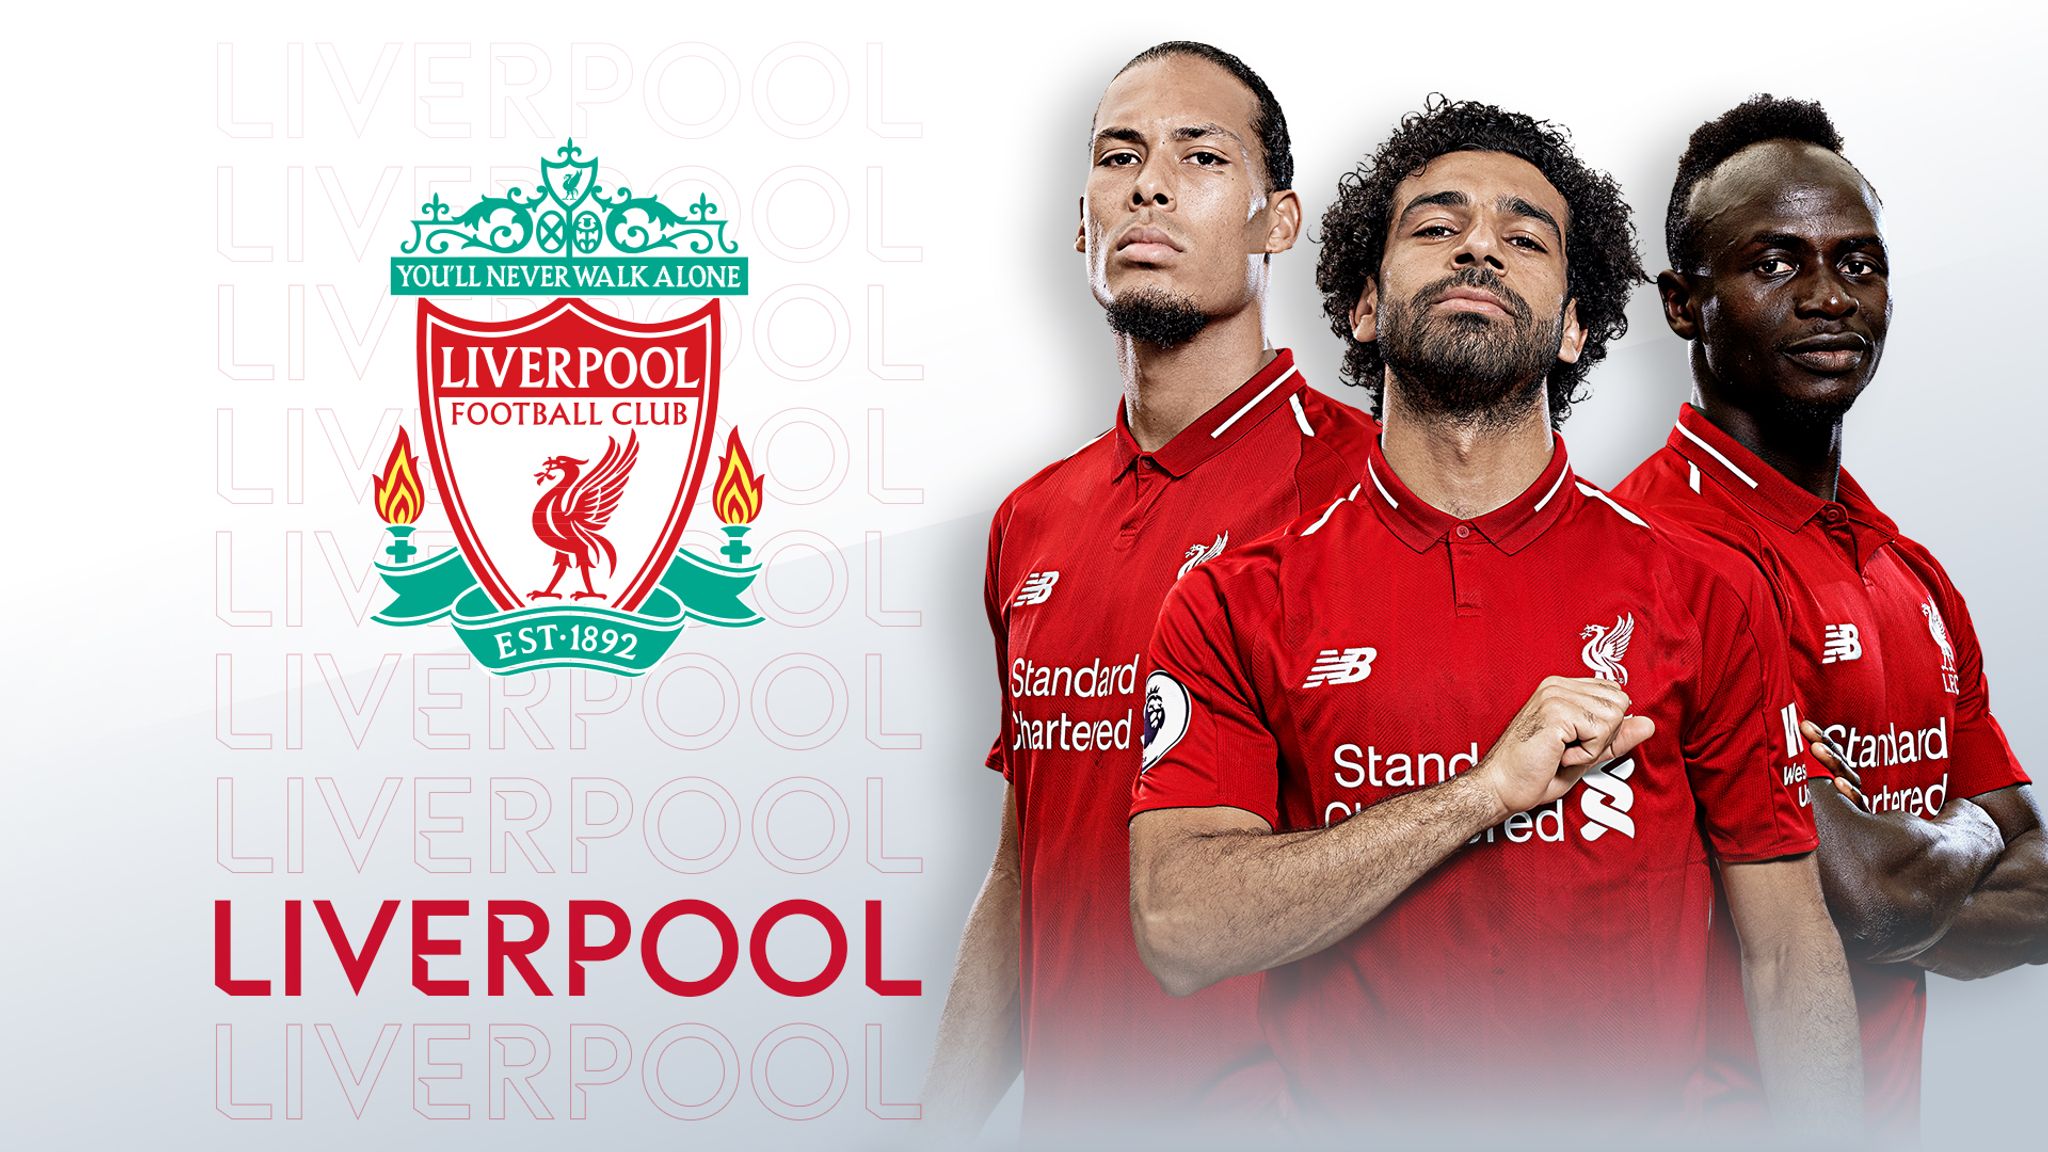 Live Football Liverpool Deals Discount, Save 40 jlcatj.gob.mx